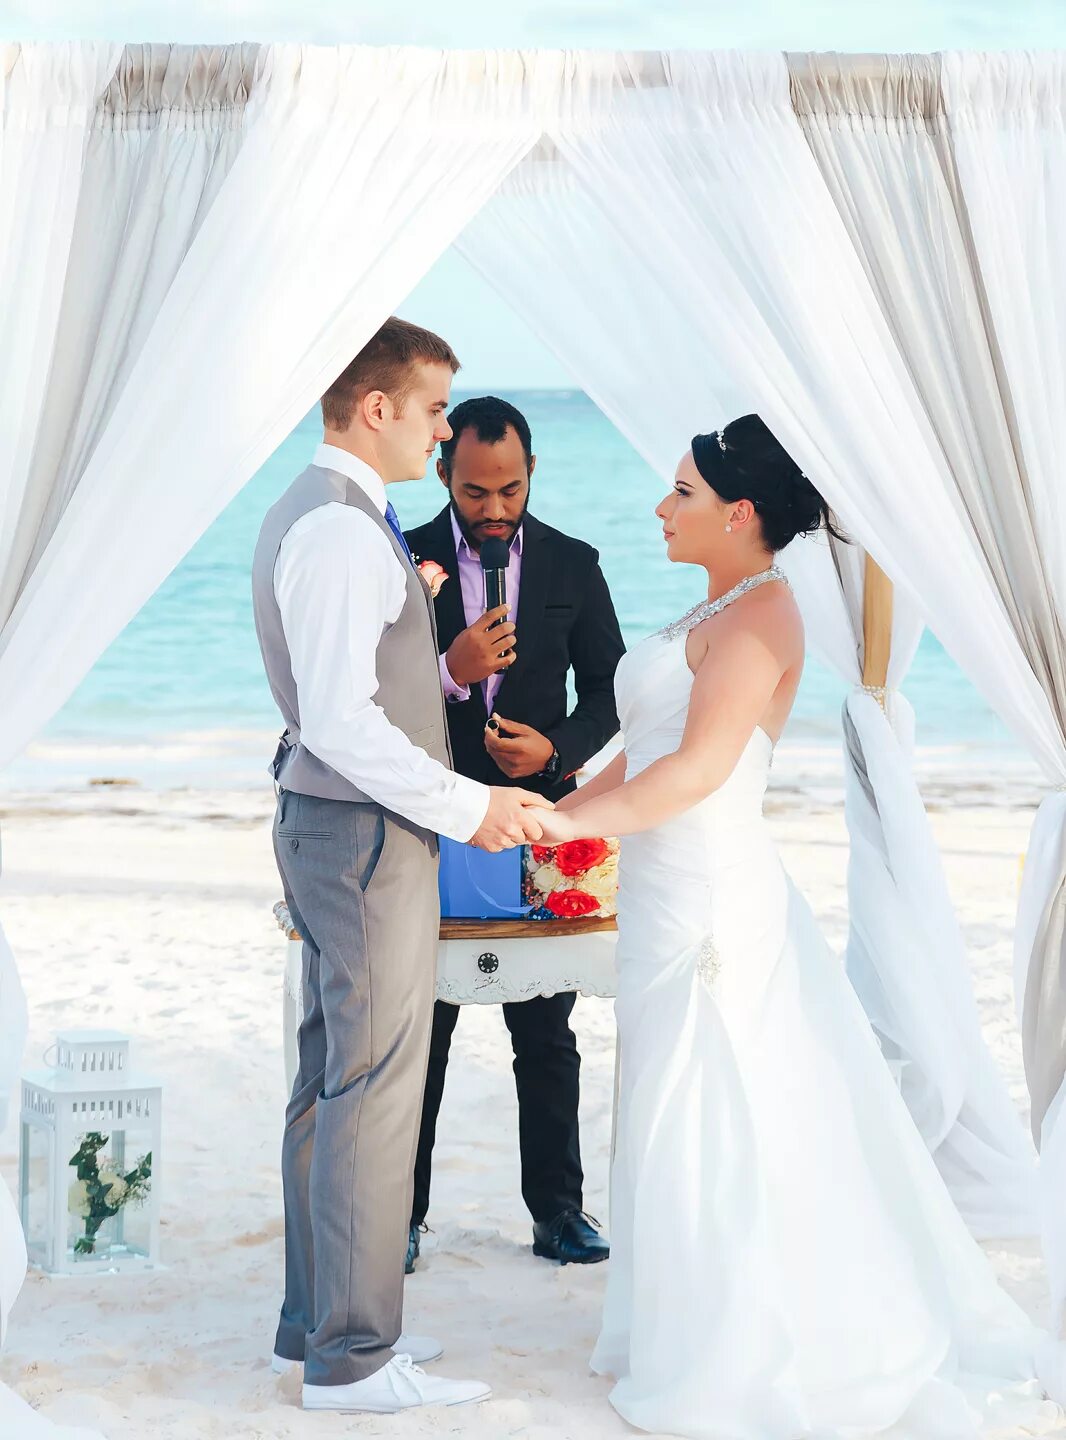 Где можно отпраздновать свадьбу. Отпраздновать свадьбу. Свадьба на пляже Хуанийо. Отмечание свадьбы. Место где праздновать свадьбу.